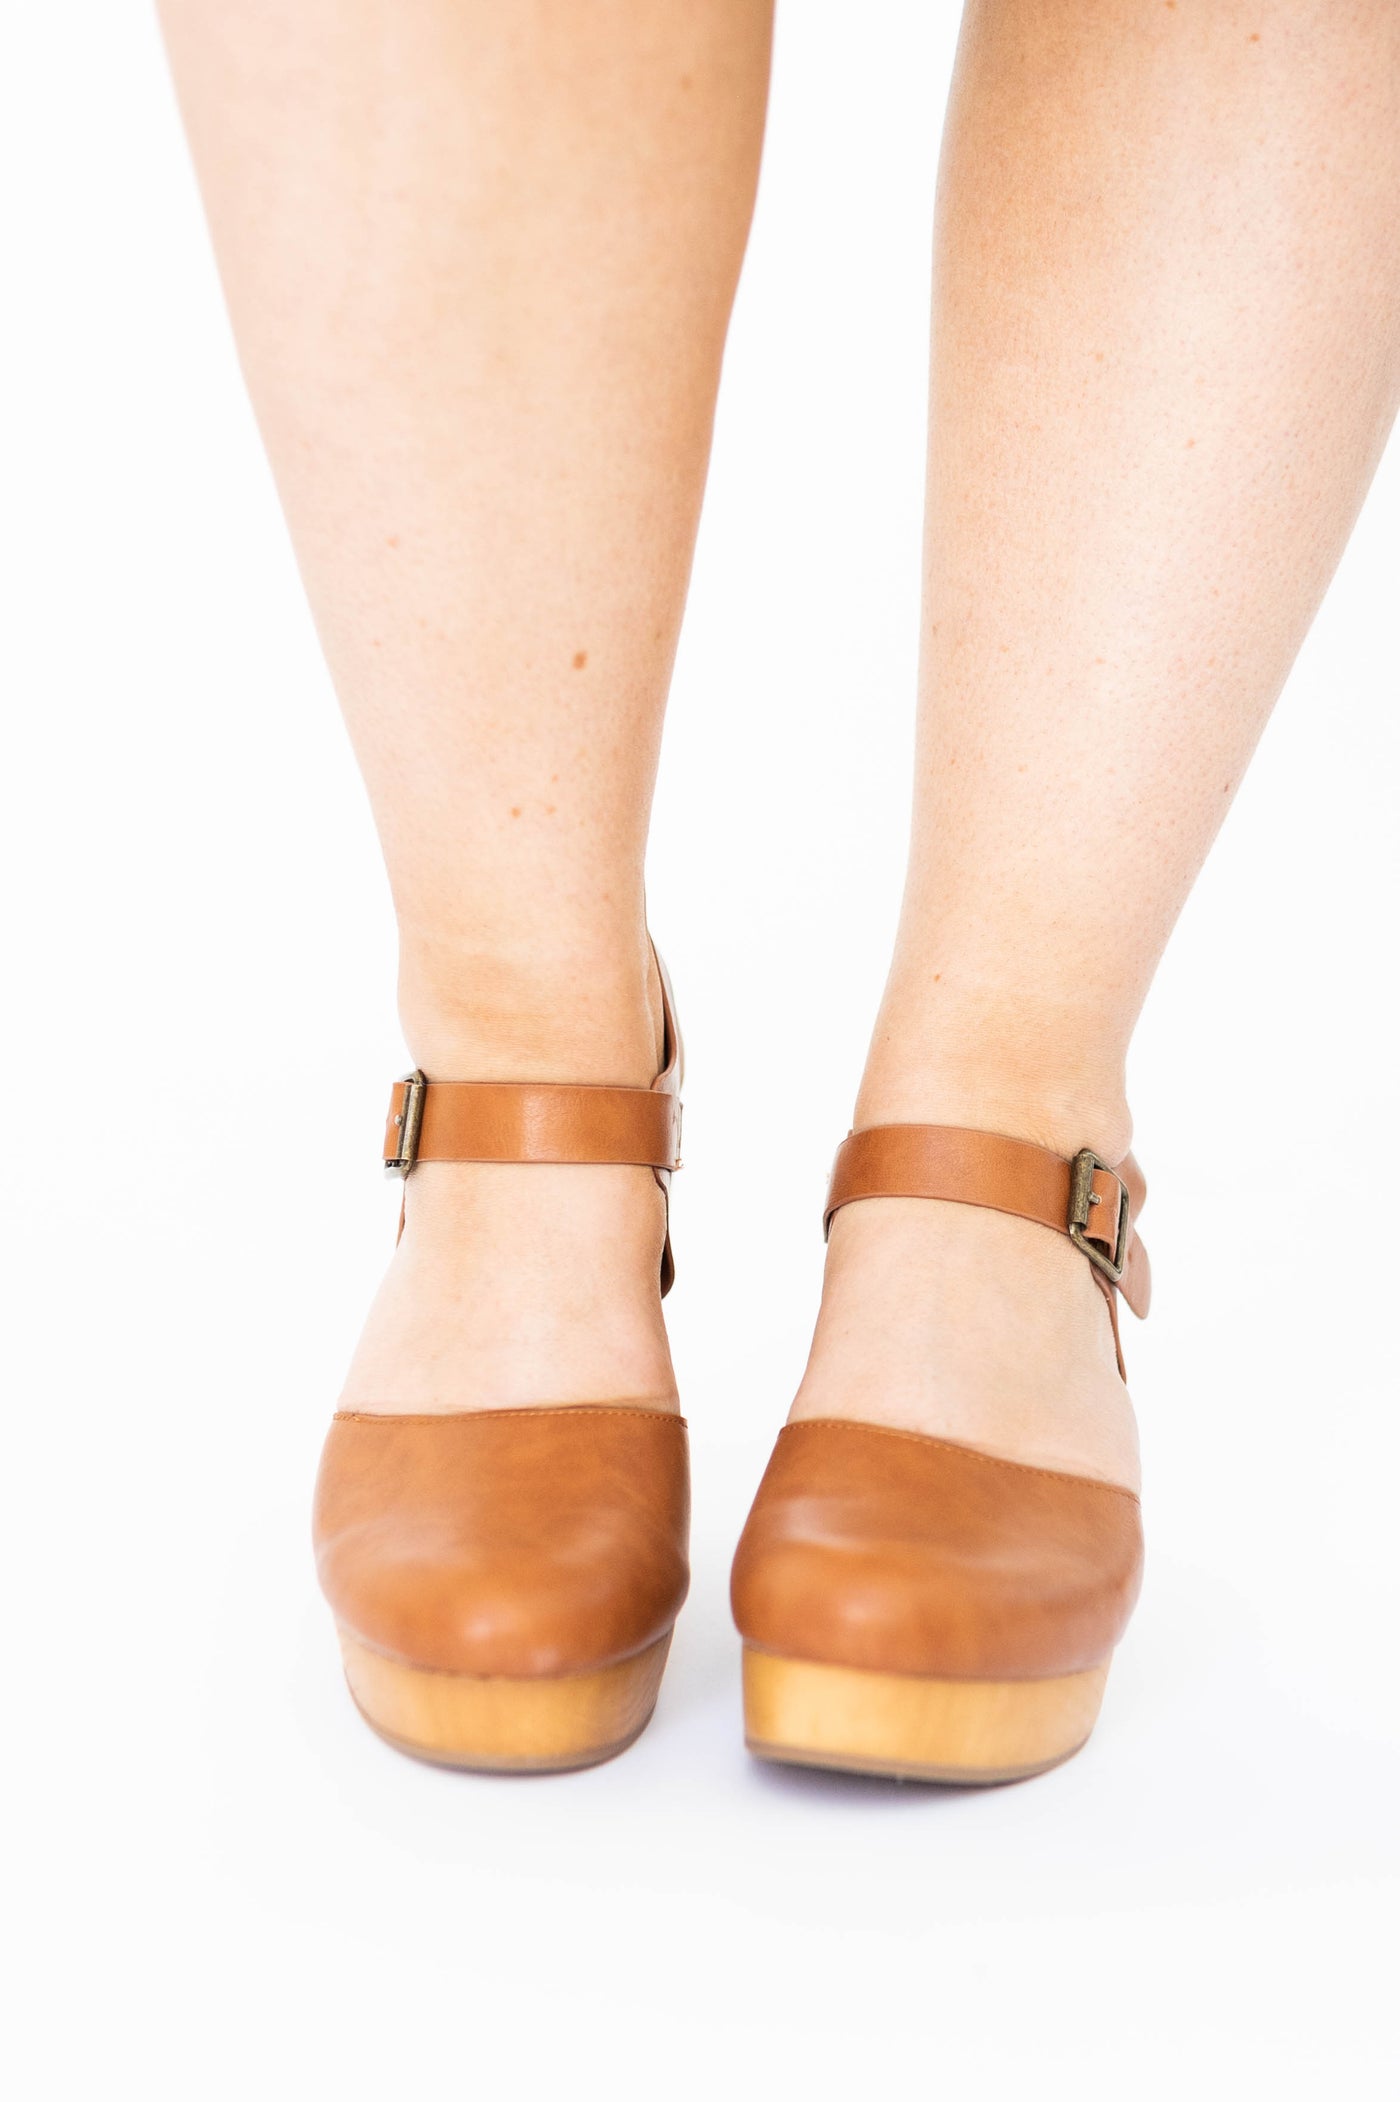 Tan sandal heels with buckles